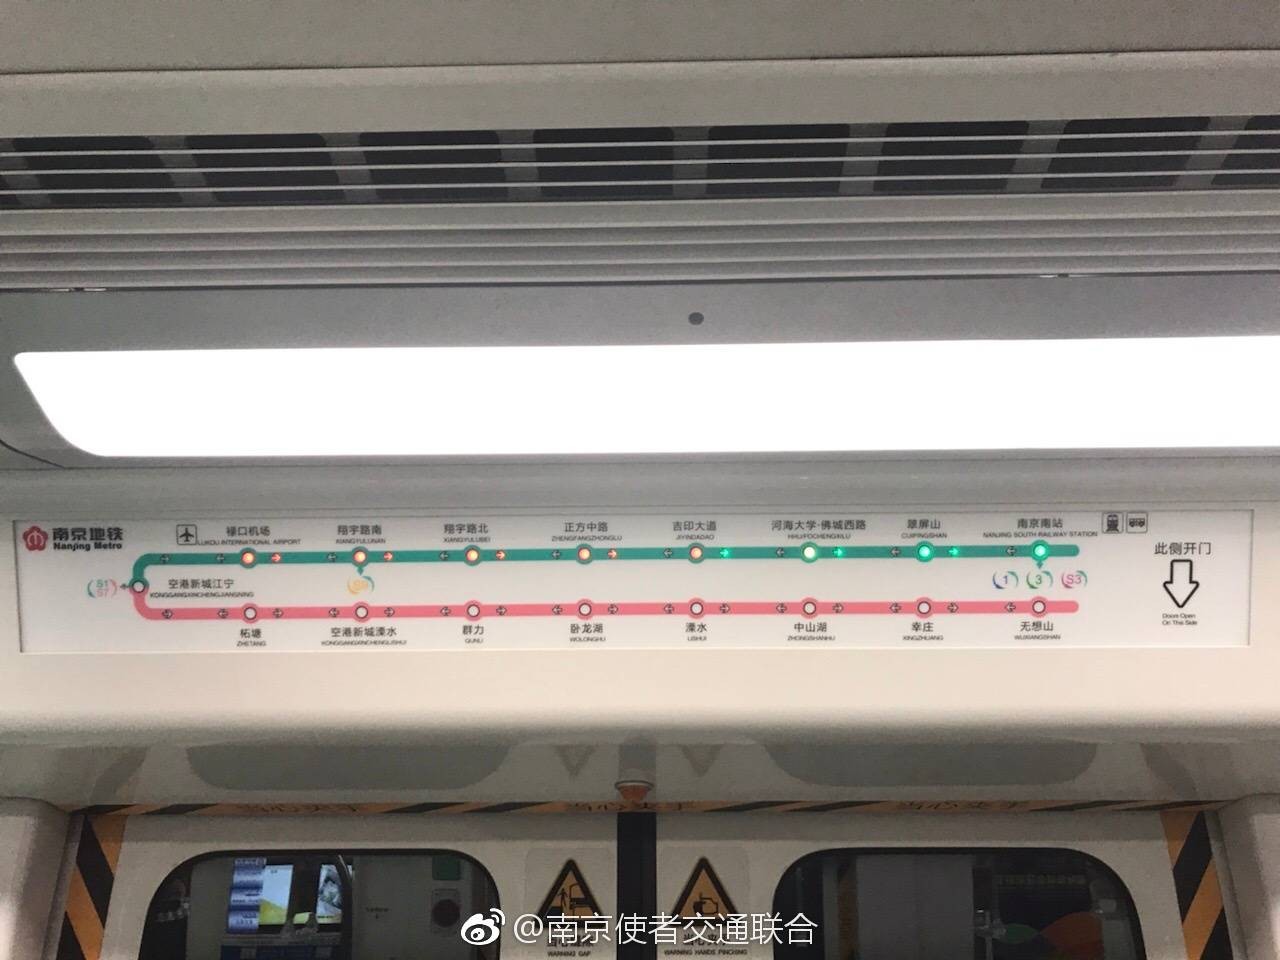 【南京地铁s线】贯通版led线路图(南京南站无想山)